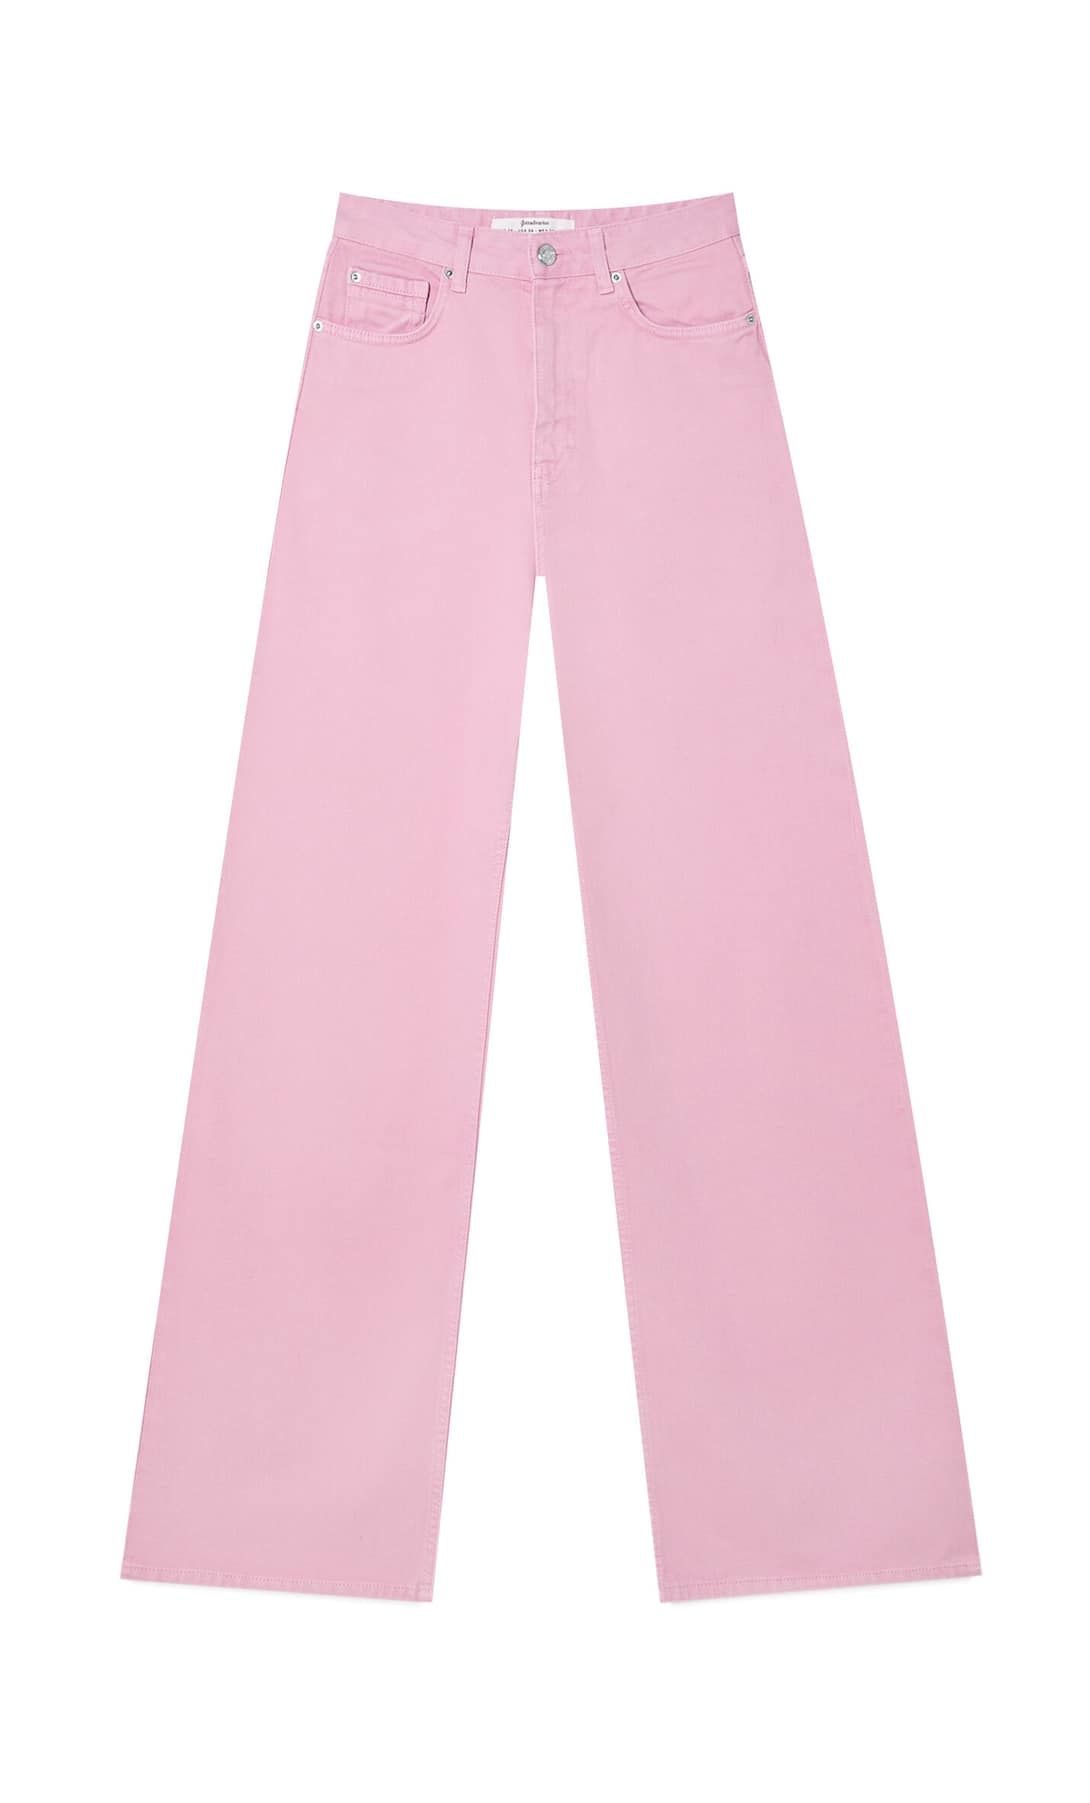 Stradivarius diseña los pantalones vaqueros rosas 'wide leg' que vas a lucir